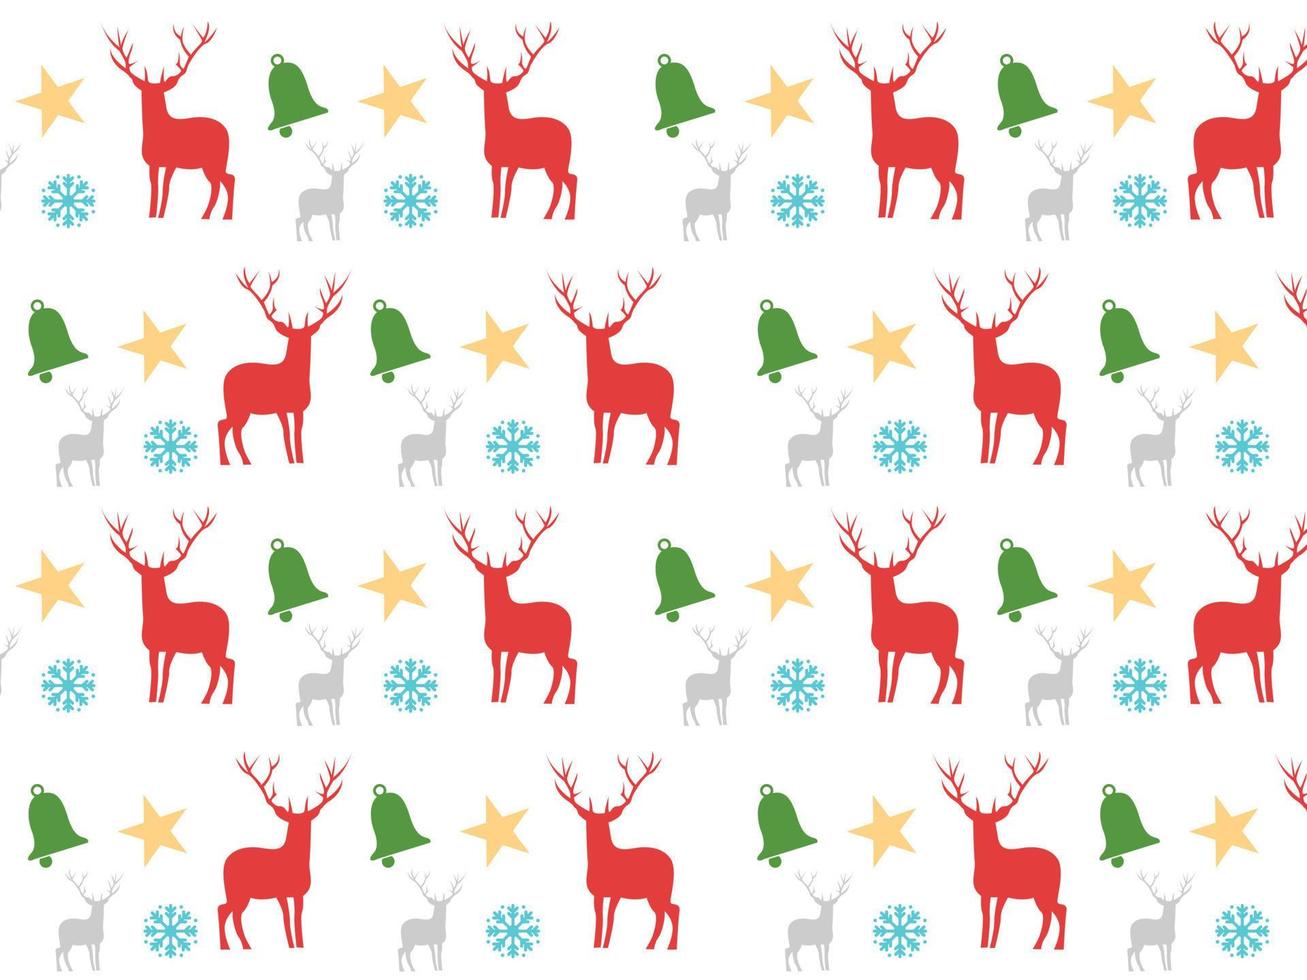 fondo blanco aislado de patrones sin fisuras con ciervos, estrellas, campanas y copos de nieve. el diseño utilizado para imprimir, fondo, envolver regalos, ropa de bebé, textil, ilustración vectorial vector